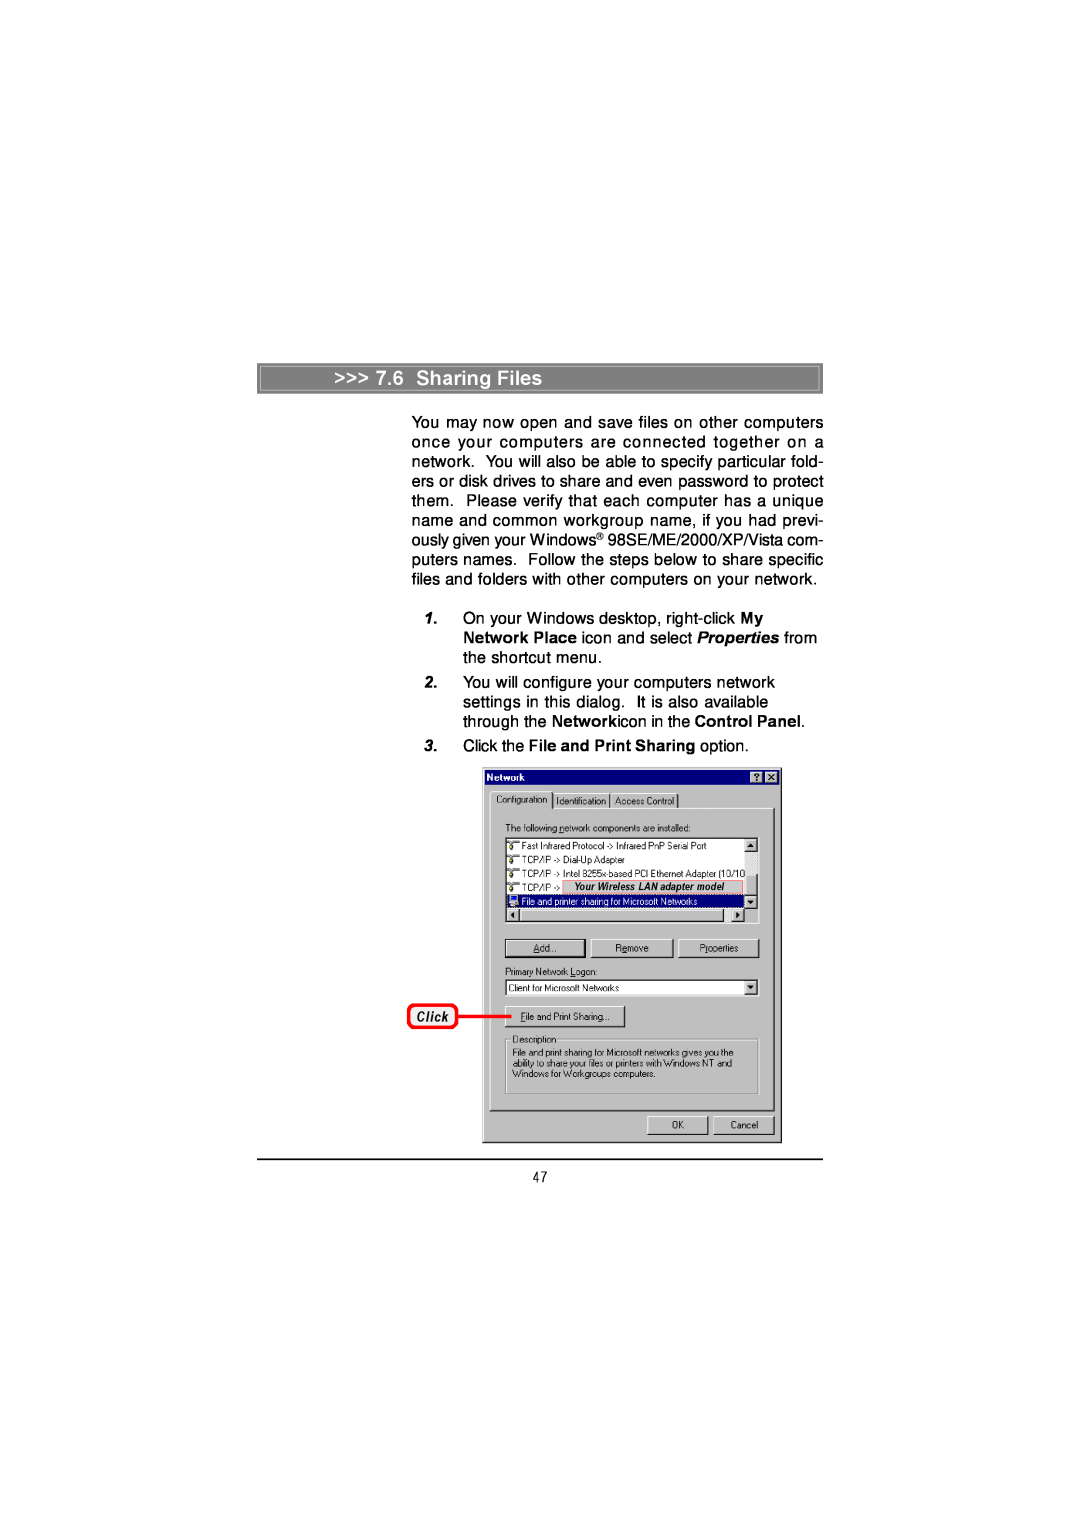 MSI US60G manual Sharing Files, Click the File and Print Sharing option 